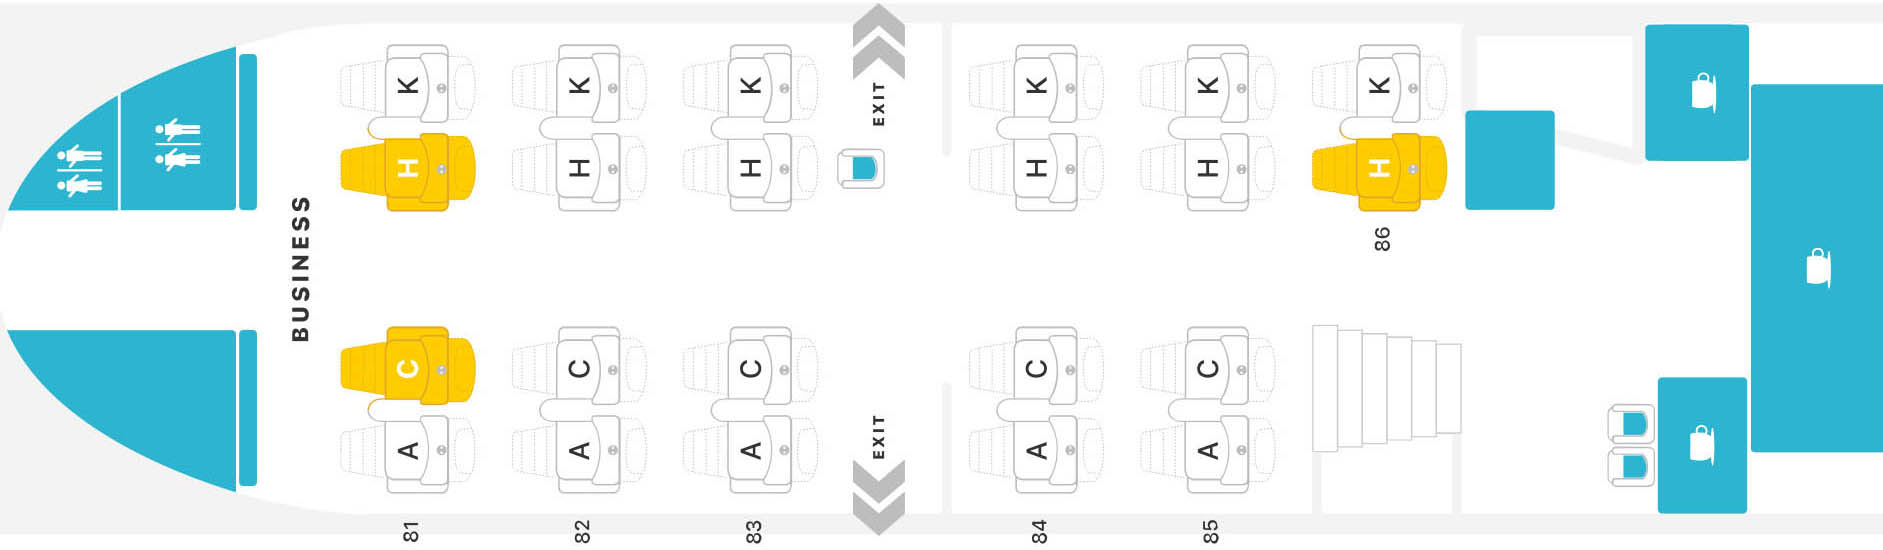 Самолет Боинг 747-400: нумерация мест в салоне, схема посадочных мест, лучшие места